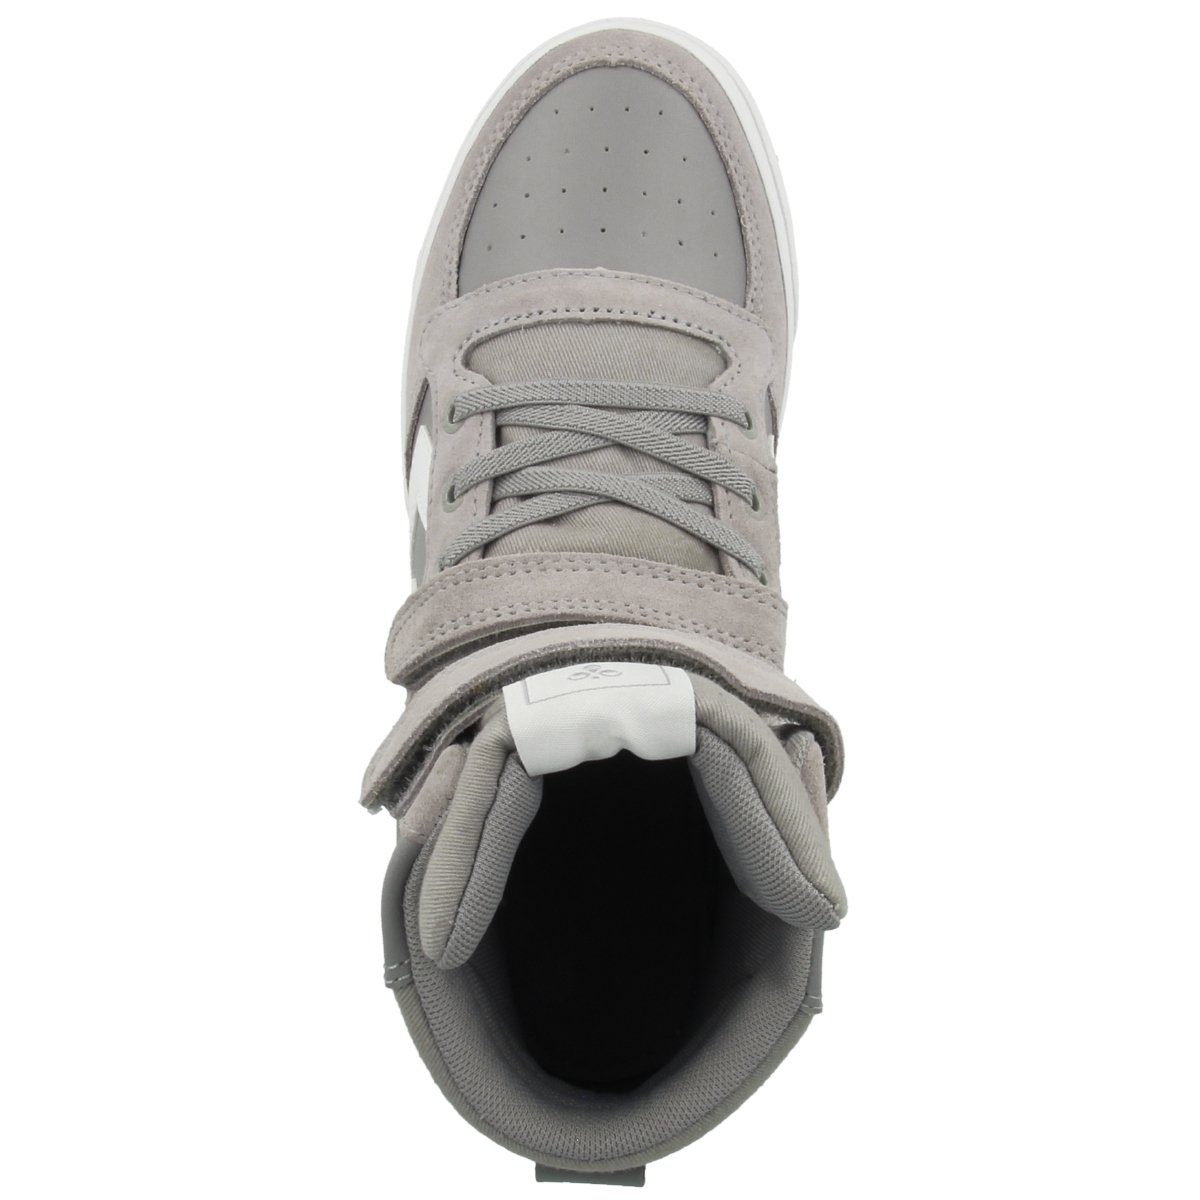 High Slimmer grau Merkmale Unisex besonderen Sneaker hummel Leather Stadil Kinder JR keine